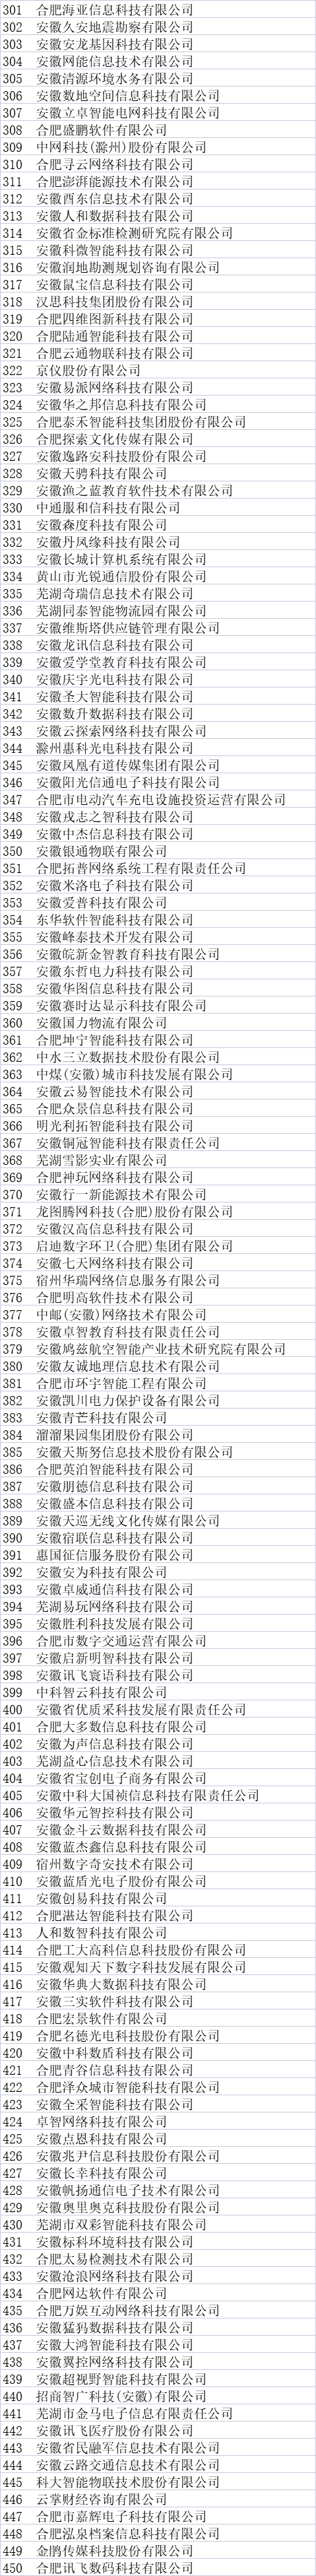 安徽省大数据企业名单